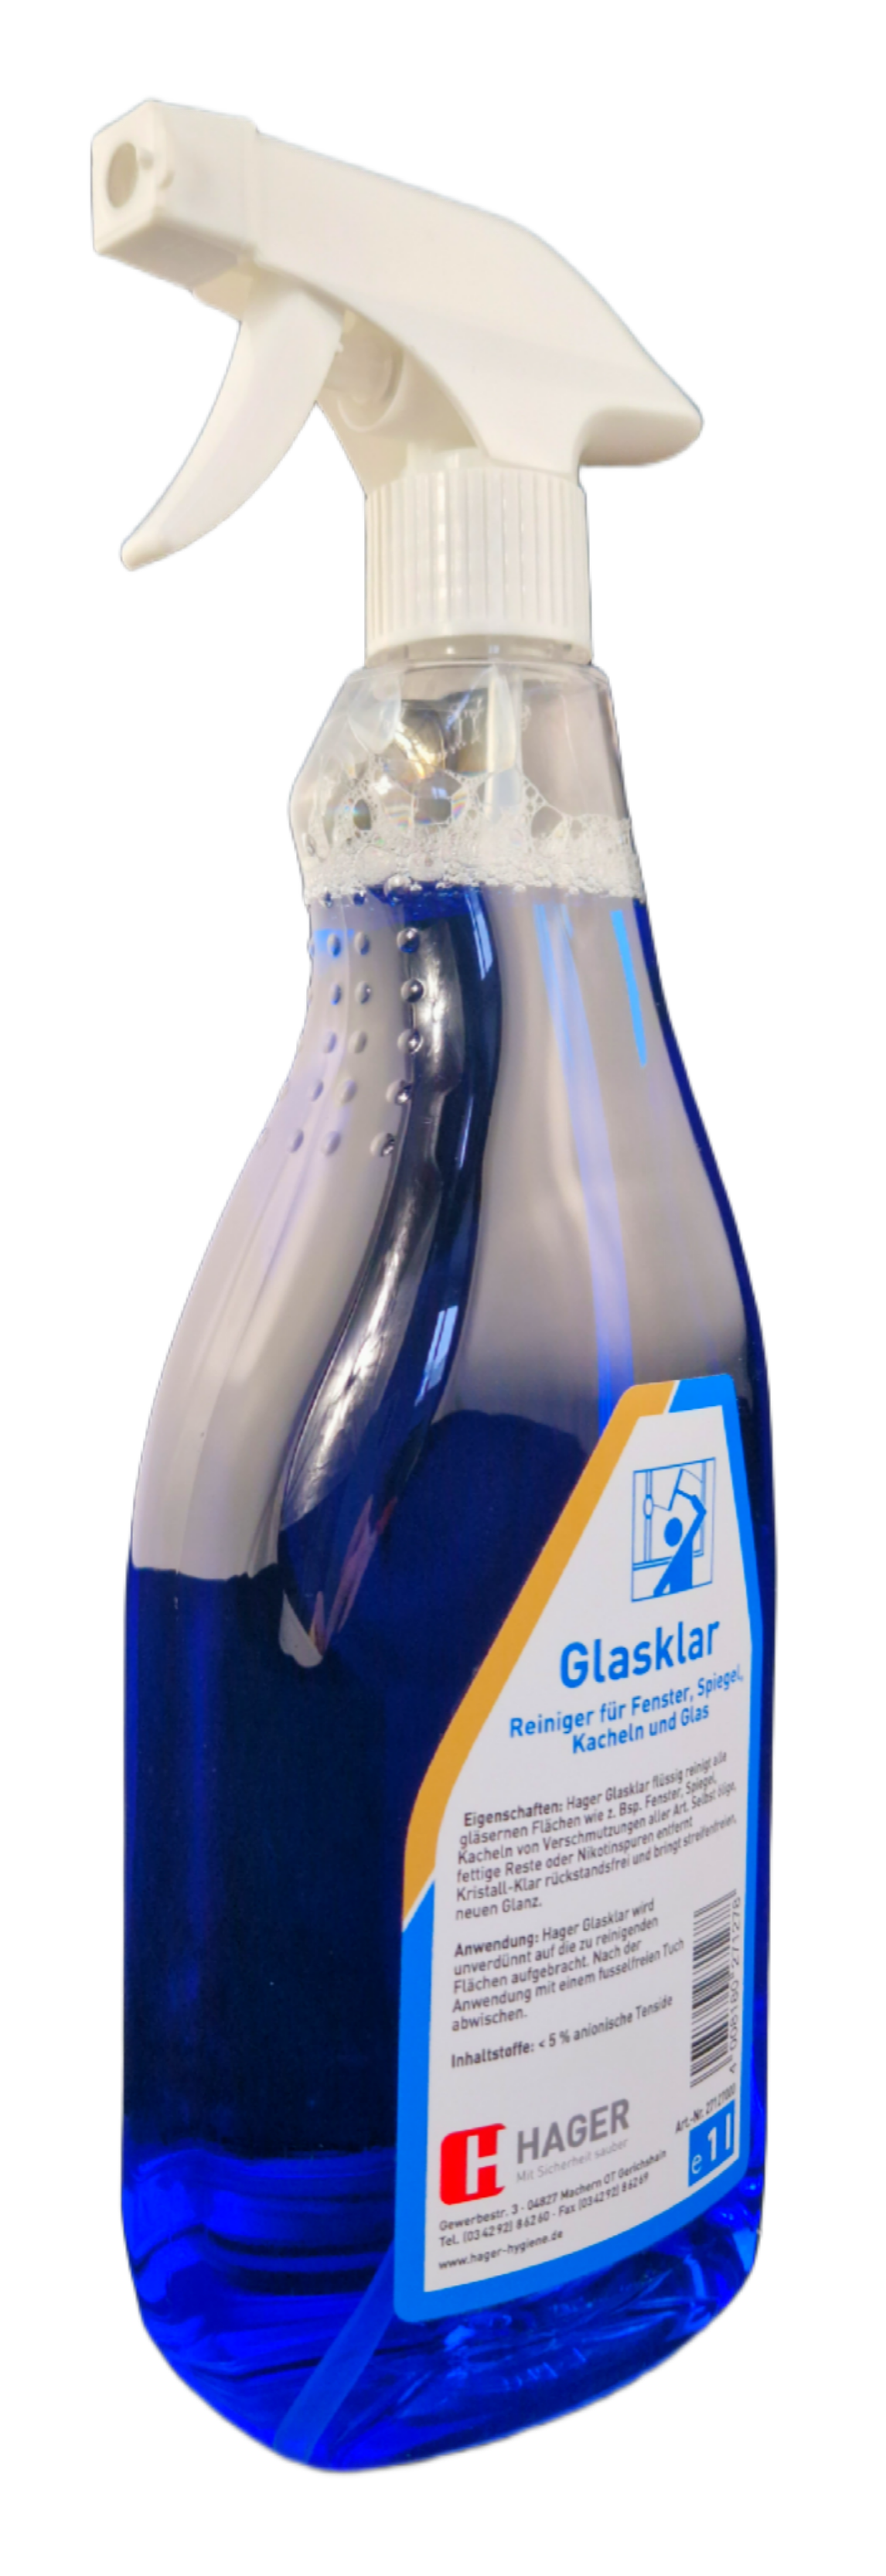 Hager - Glasklar Glasreiniger 1 Liter Sprühflasche